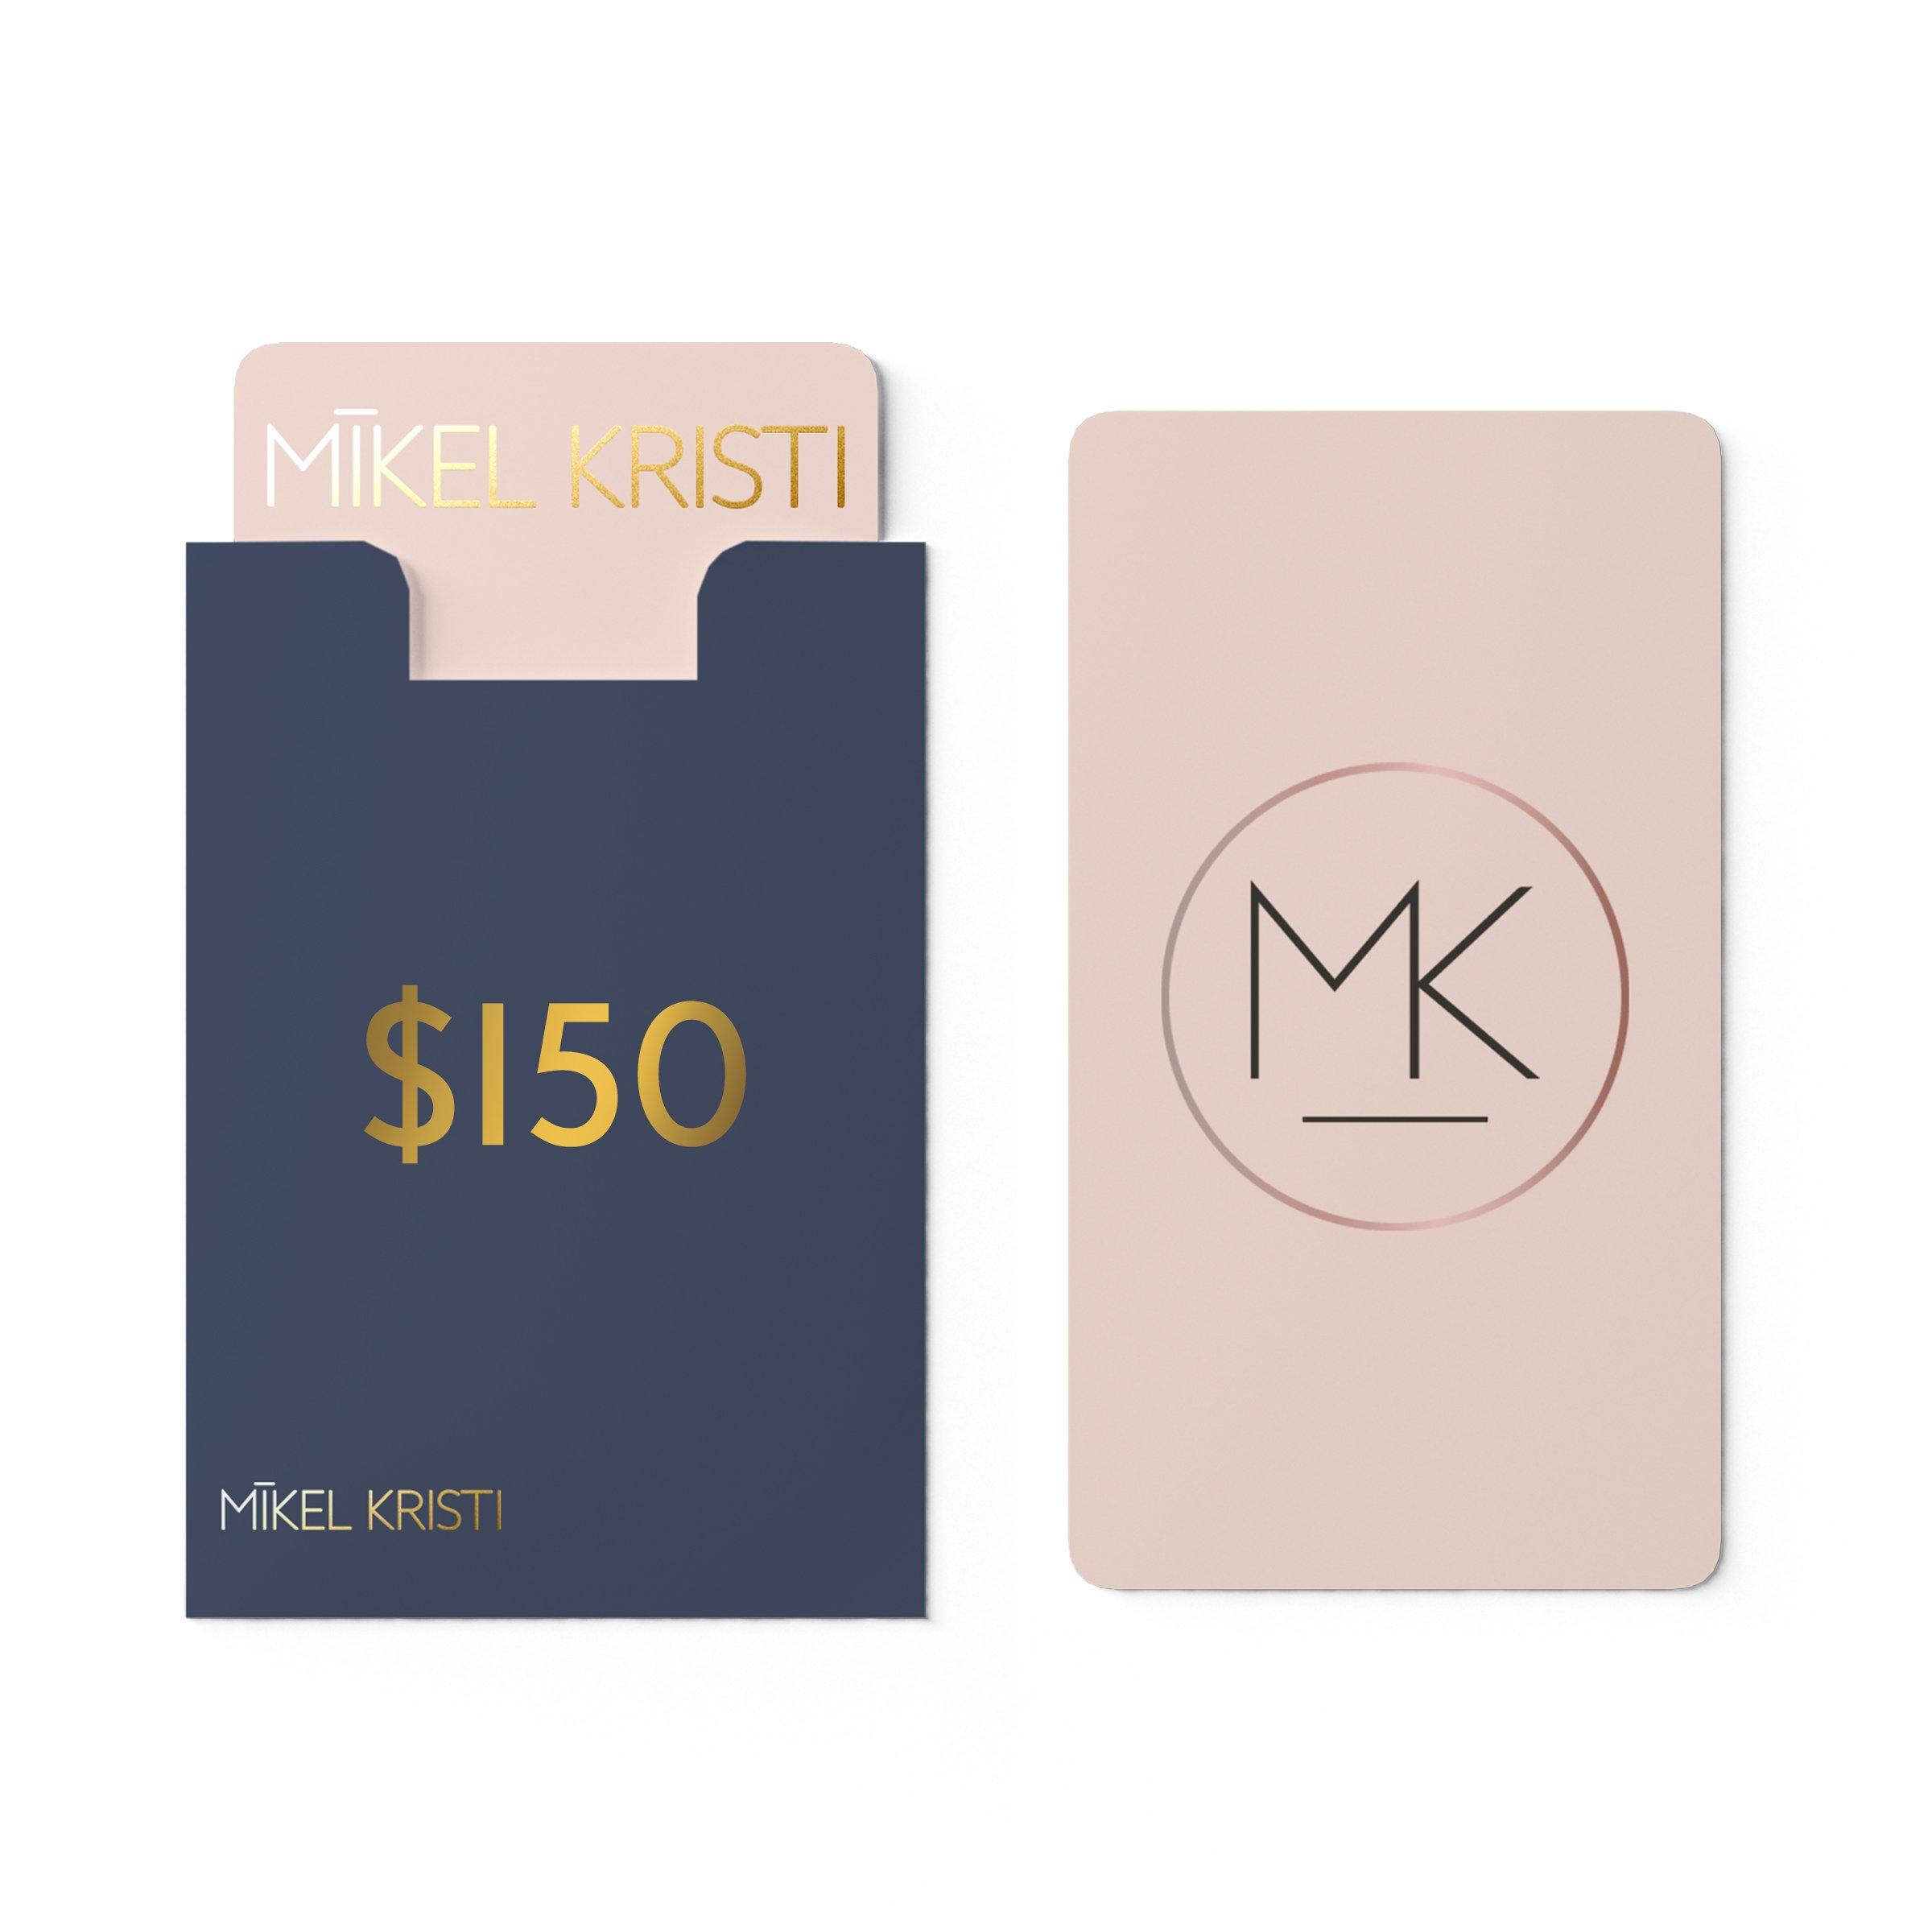 MK gift card